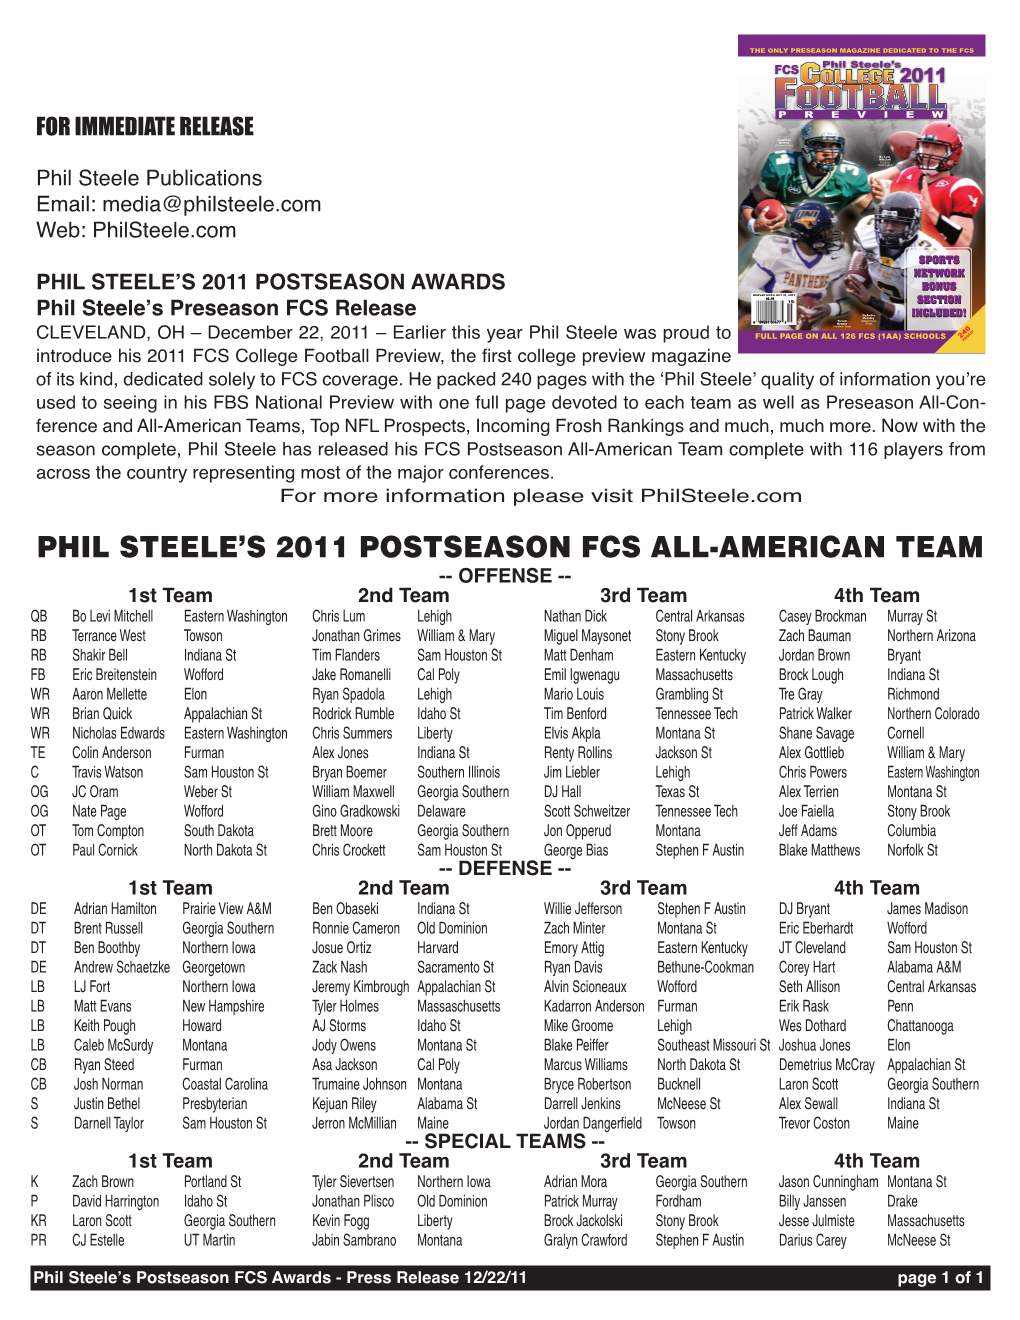 Phil Steele's 2011 Postseason Fcs All-American Team